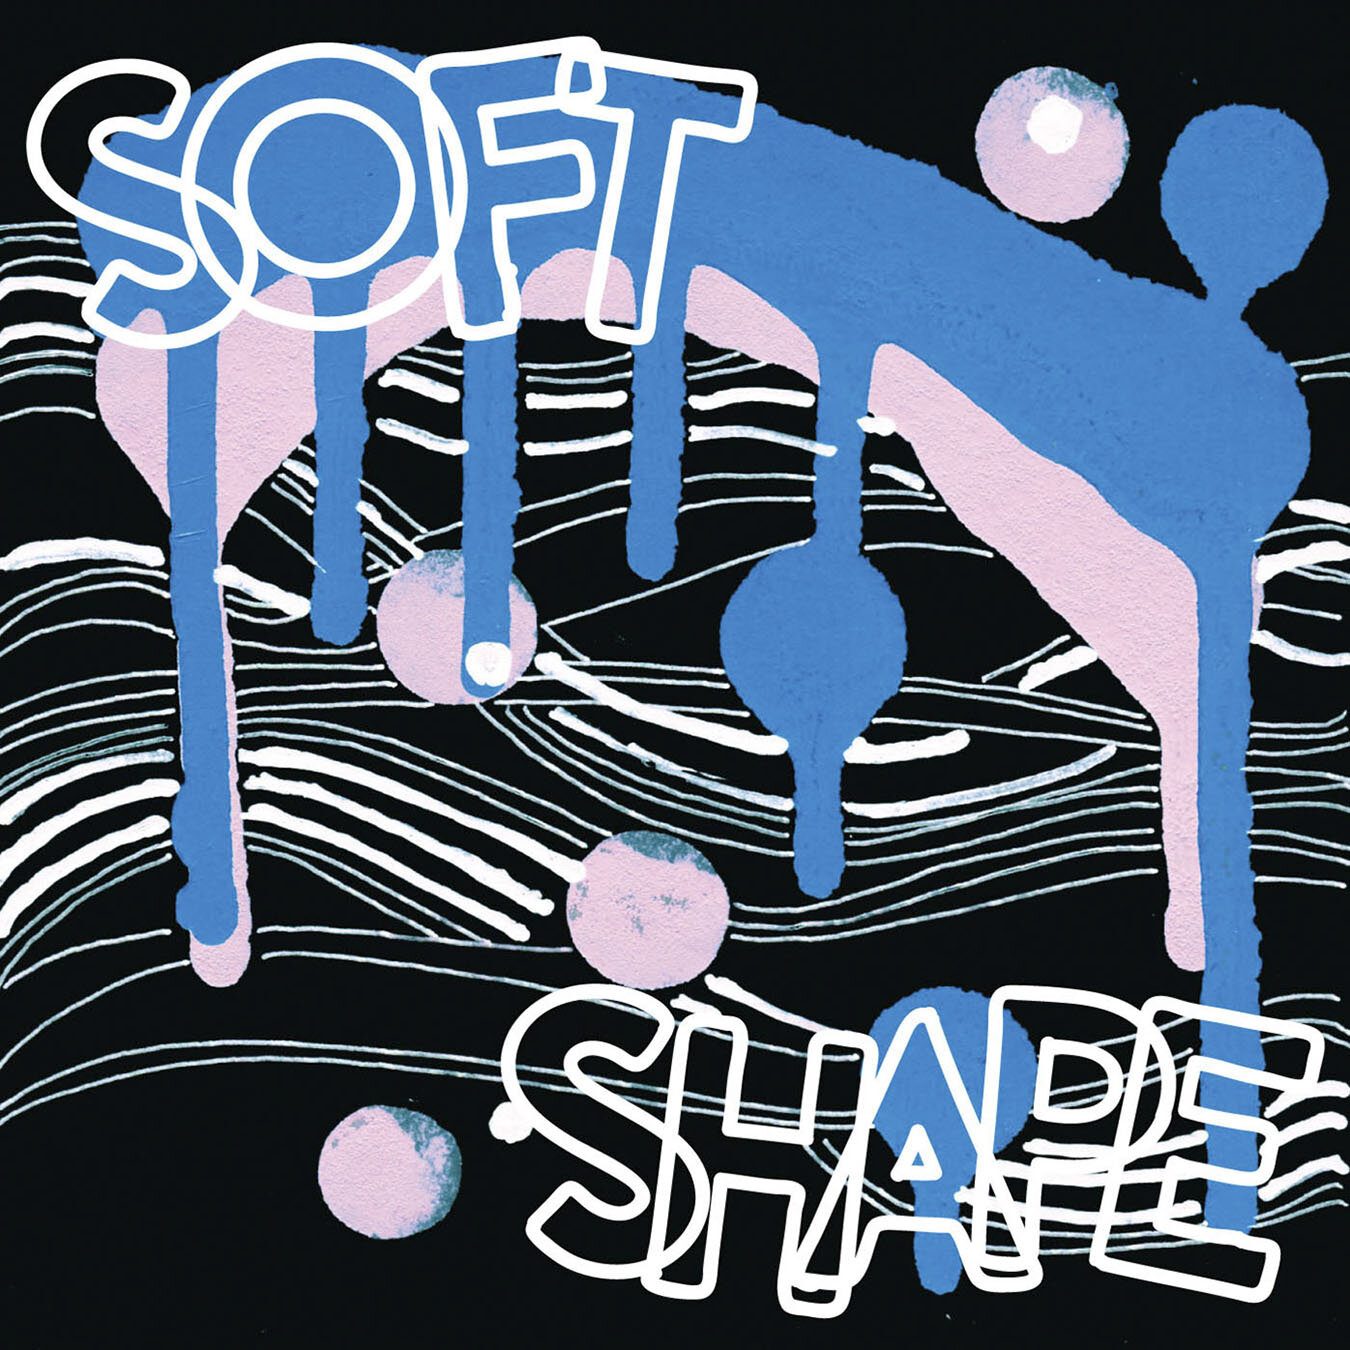 SOFT SHAPE ALBUM COVER DESIGN 2020